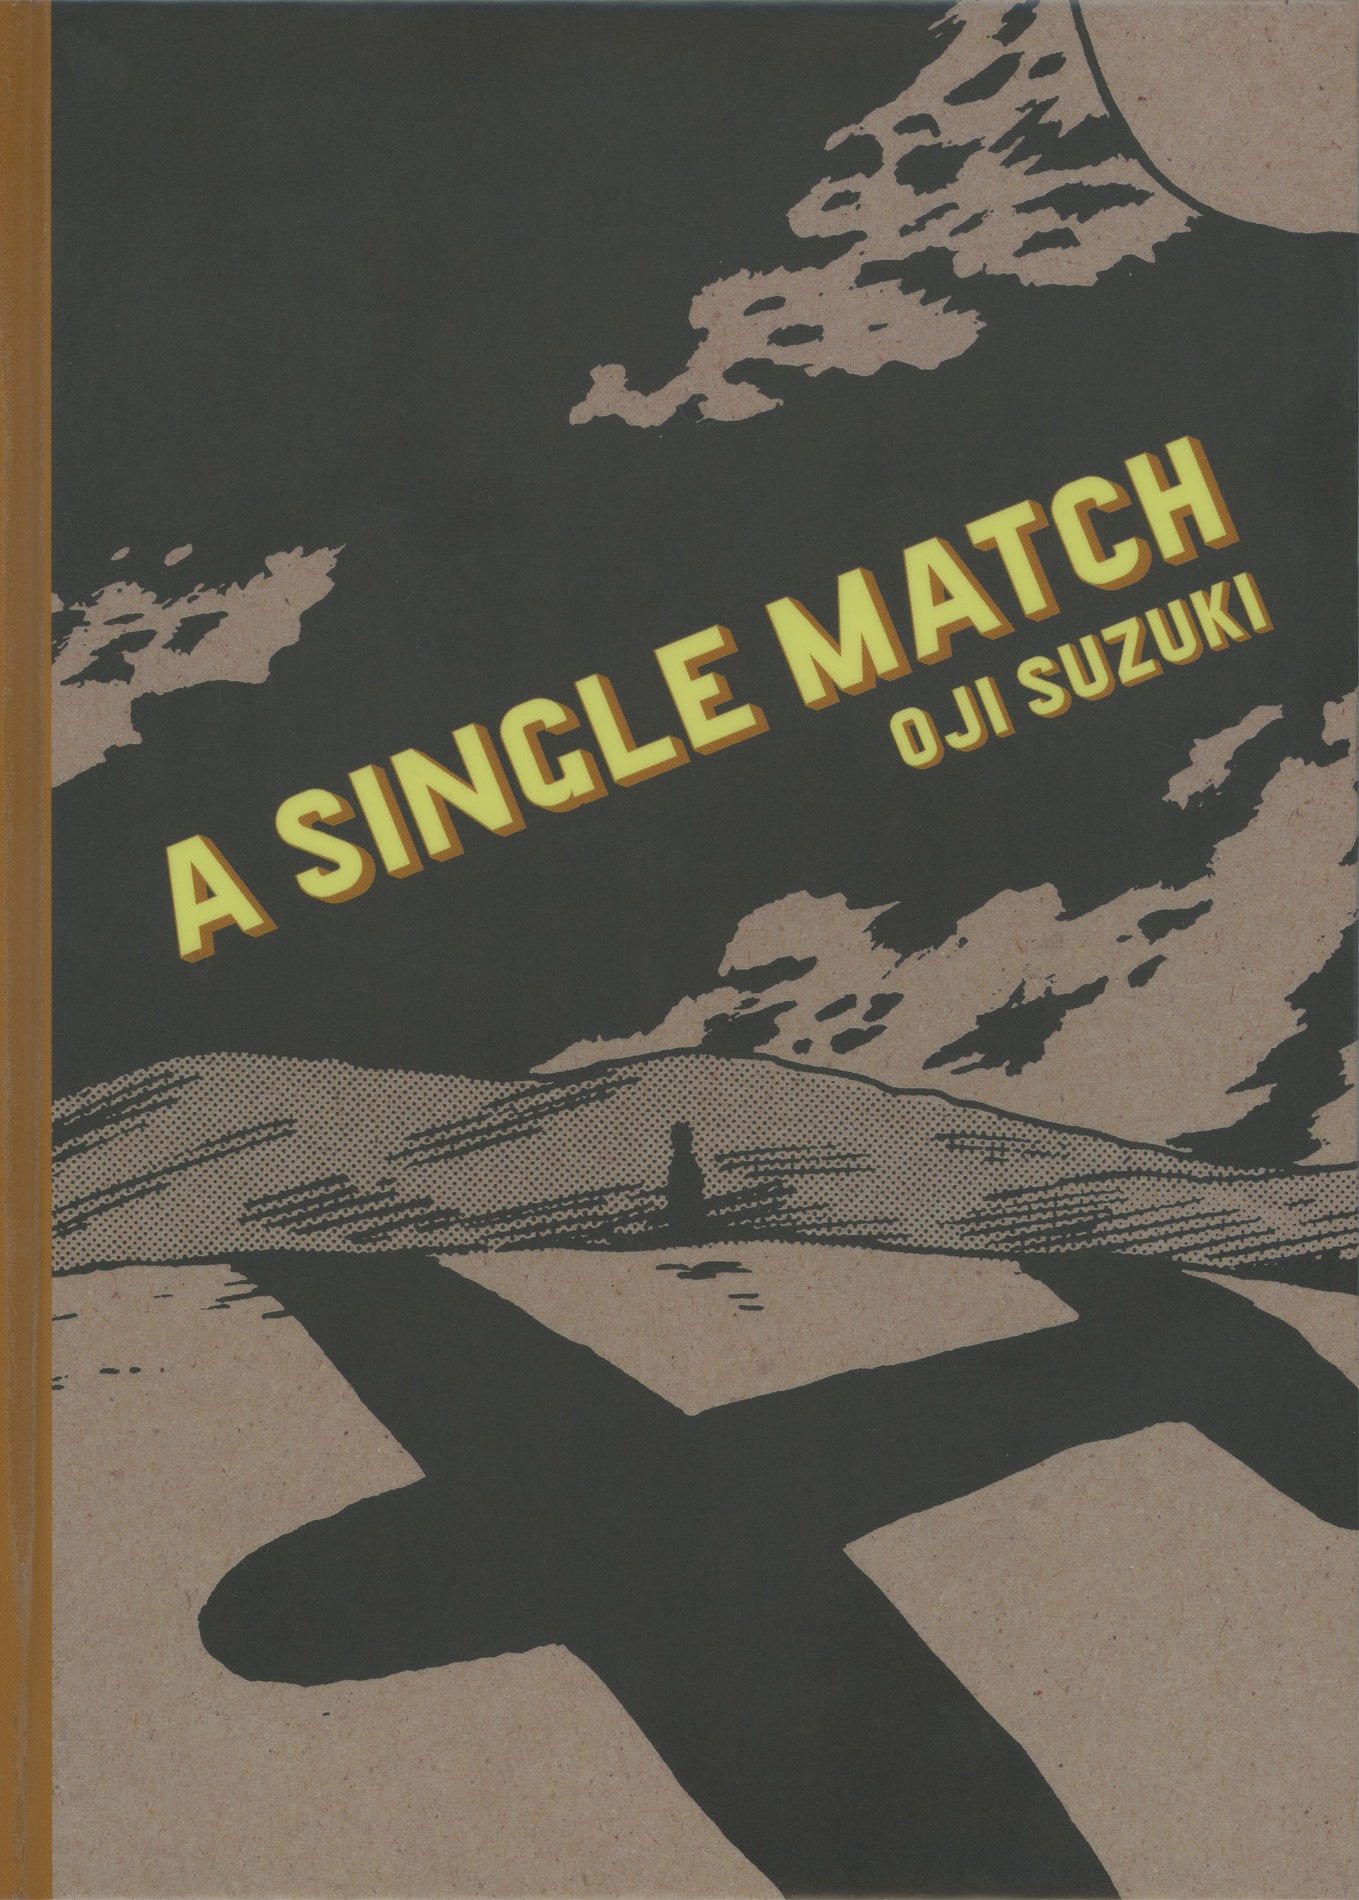 A Single Match (Red Kimono) manga review